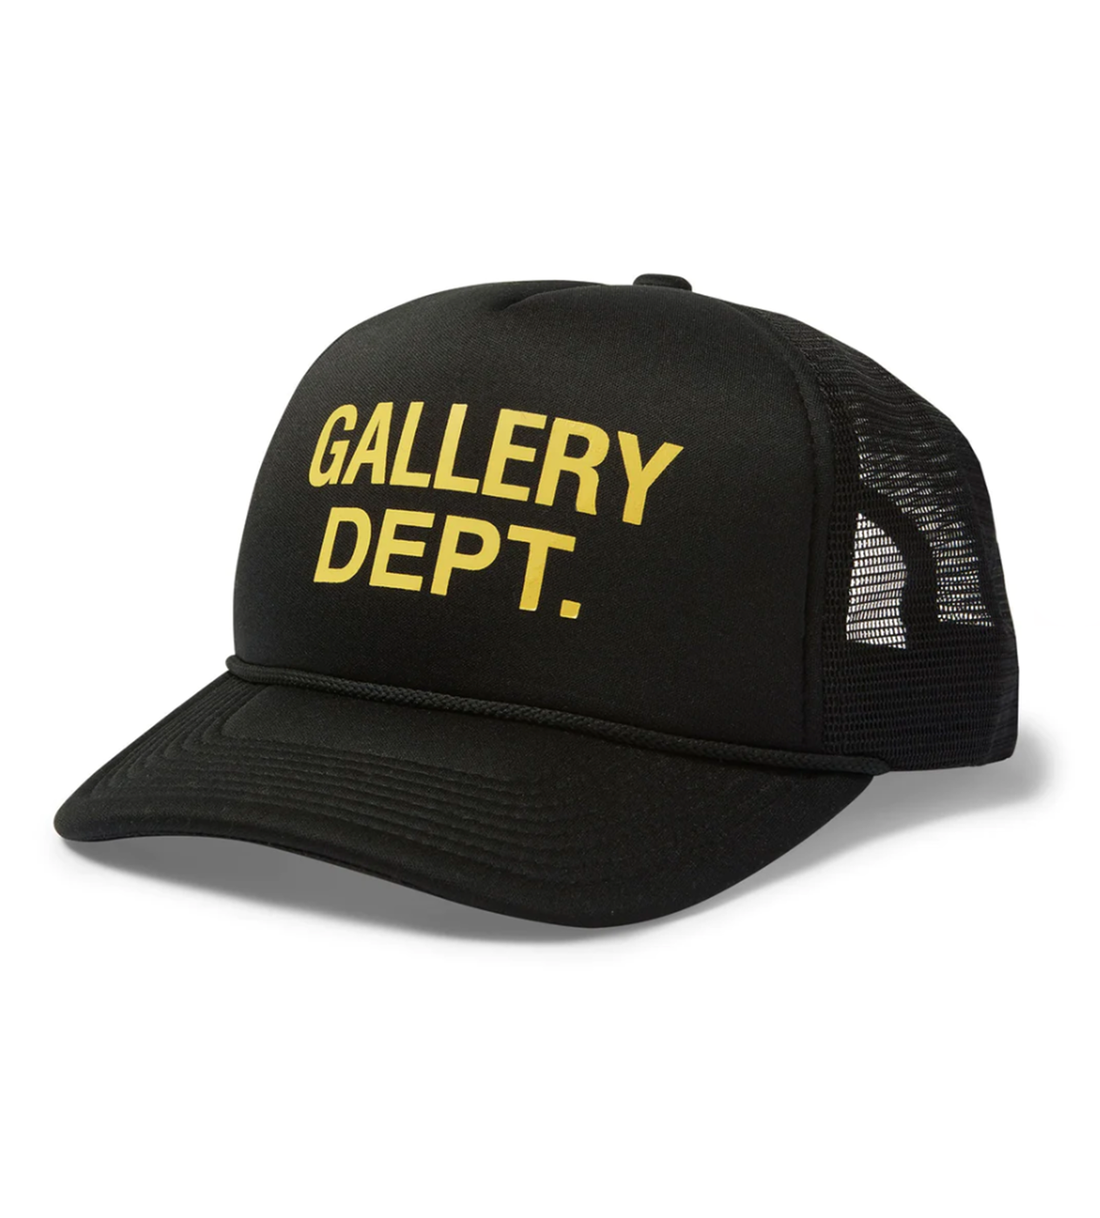 Gallery Dept Black/Yellow Trucker Hat